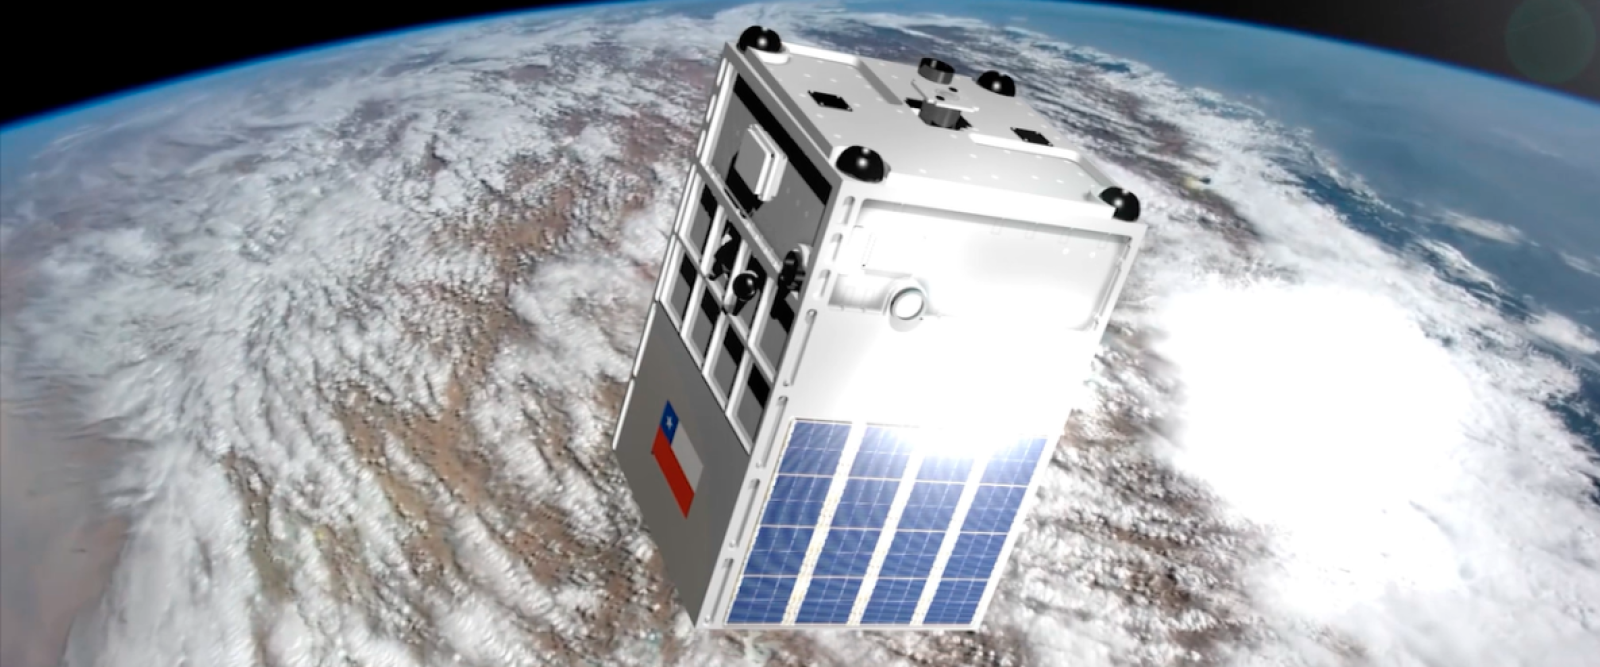 Preparan lanzamiento de satélite chileno FASat-Delta